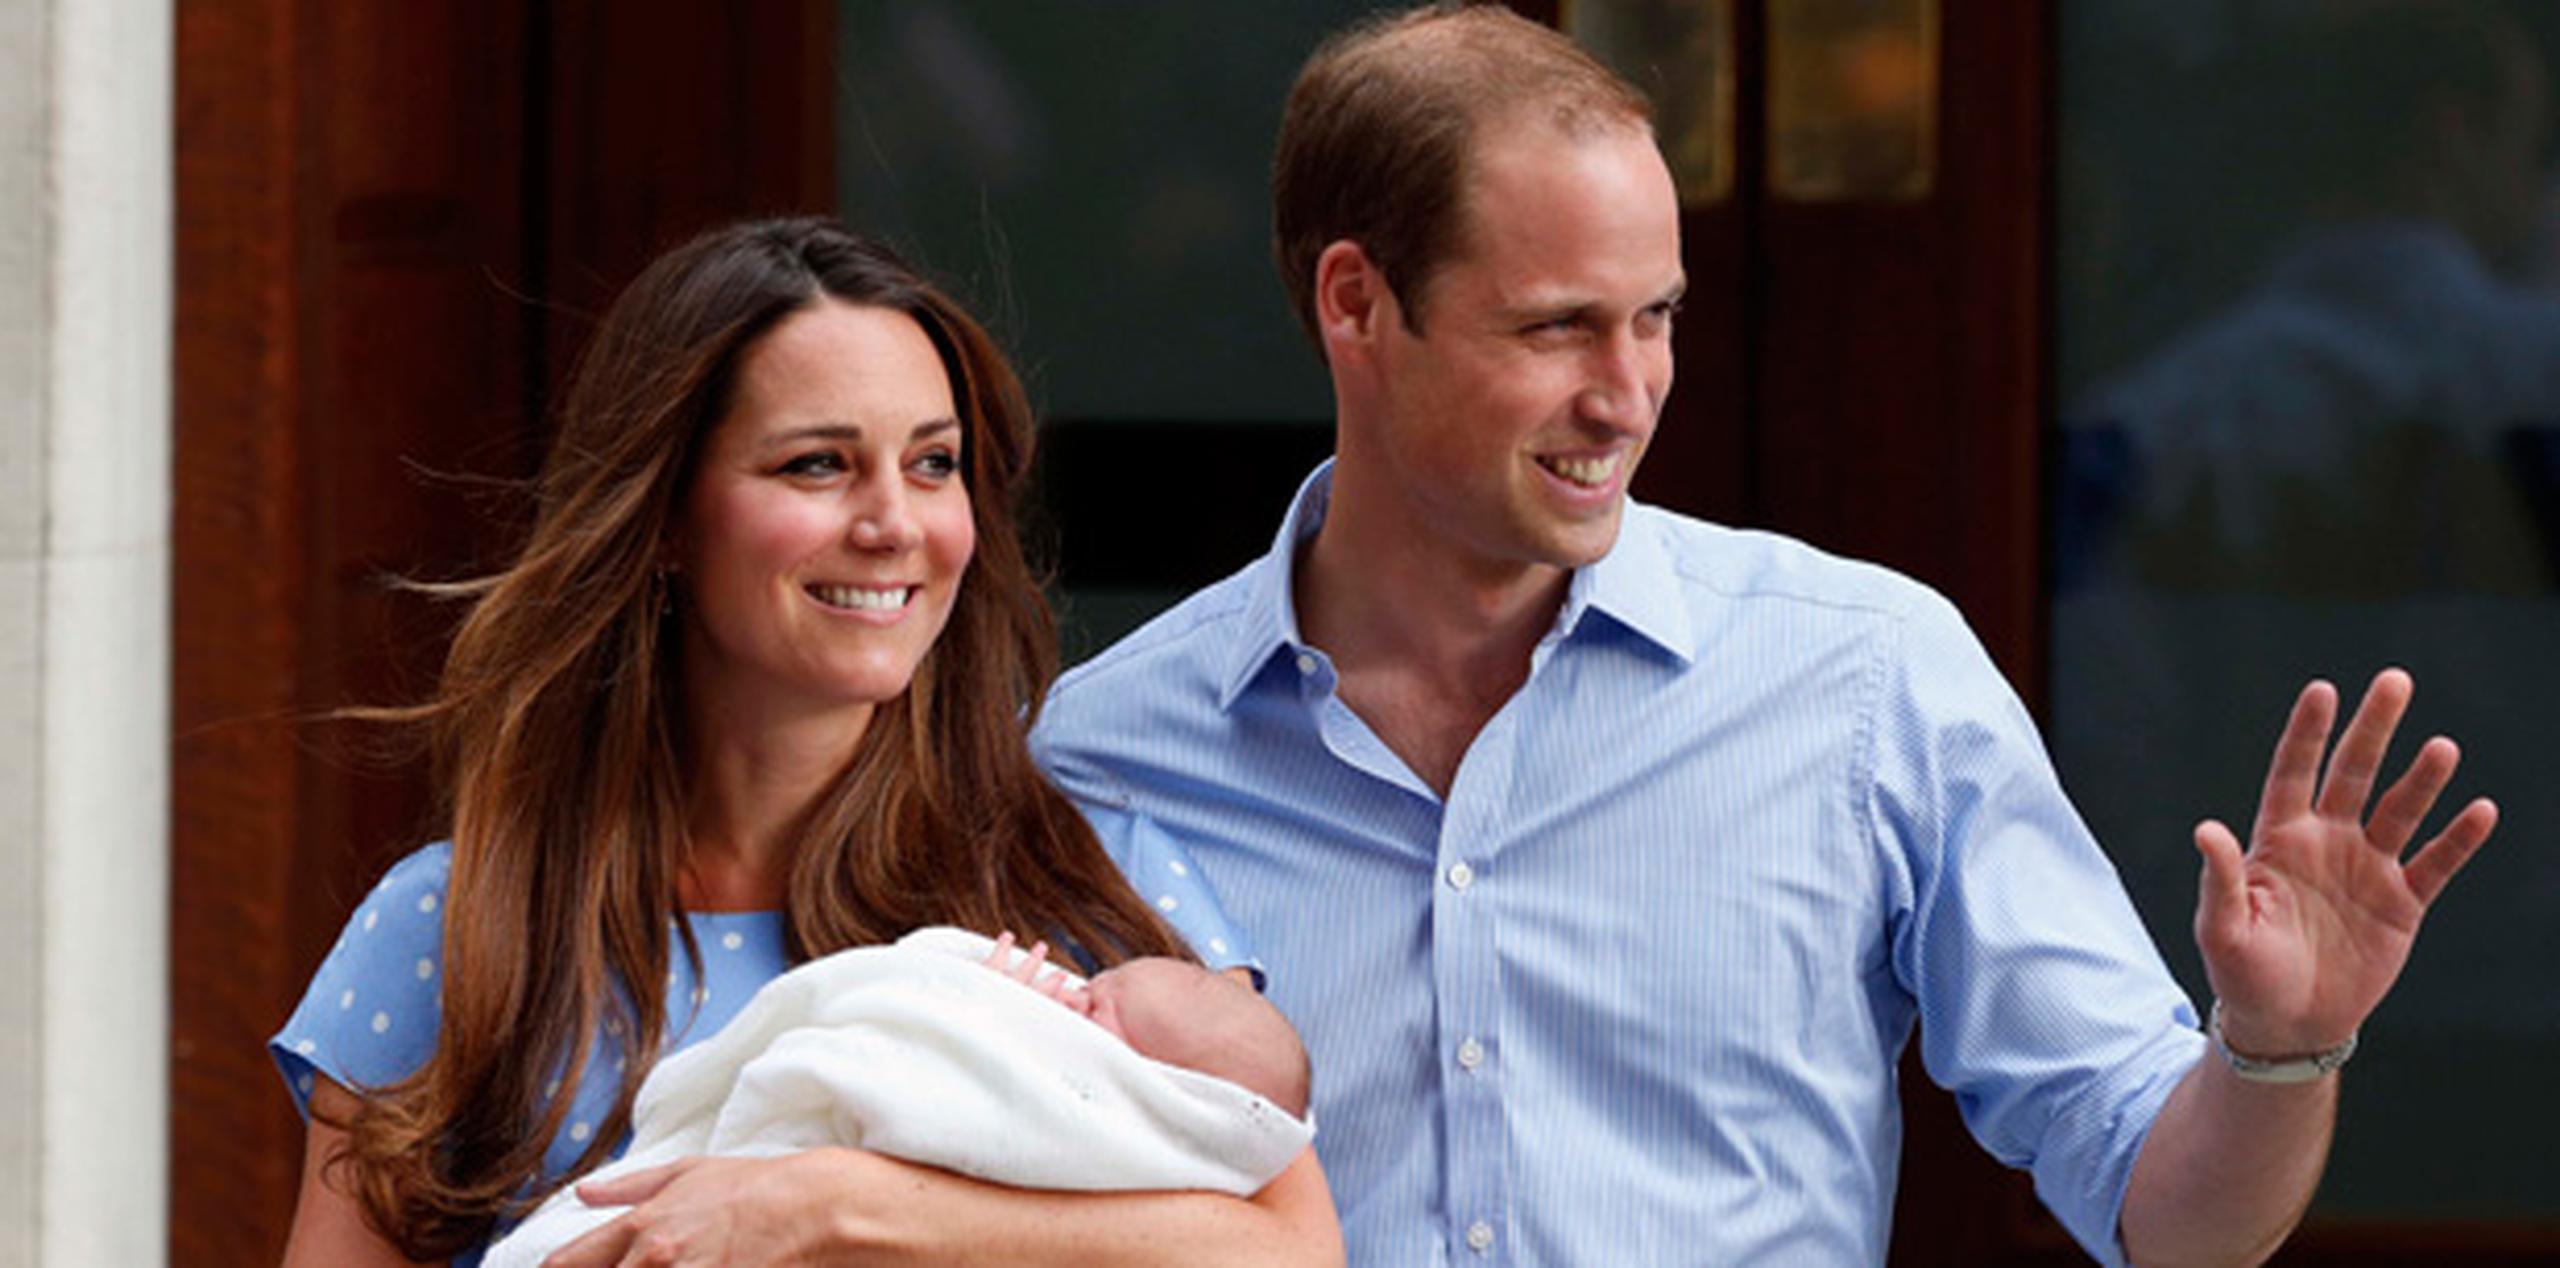 El segundo hijo de los duques de Cambridge se convertirá en el cuarto en la línea de sucesión al trono británico, tras su hermano, el príncipe Jorge, su padre, el príncipe Guillermo, y su abuelo, el príncipe Carlos.  (AP)